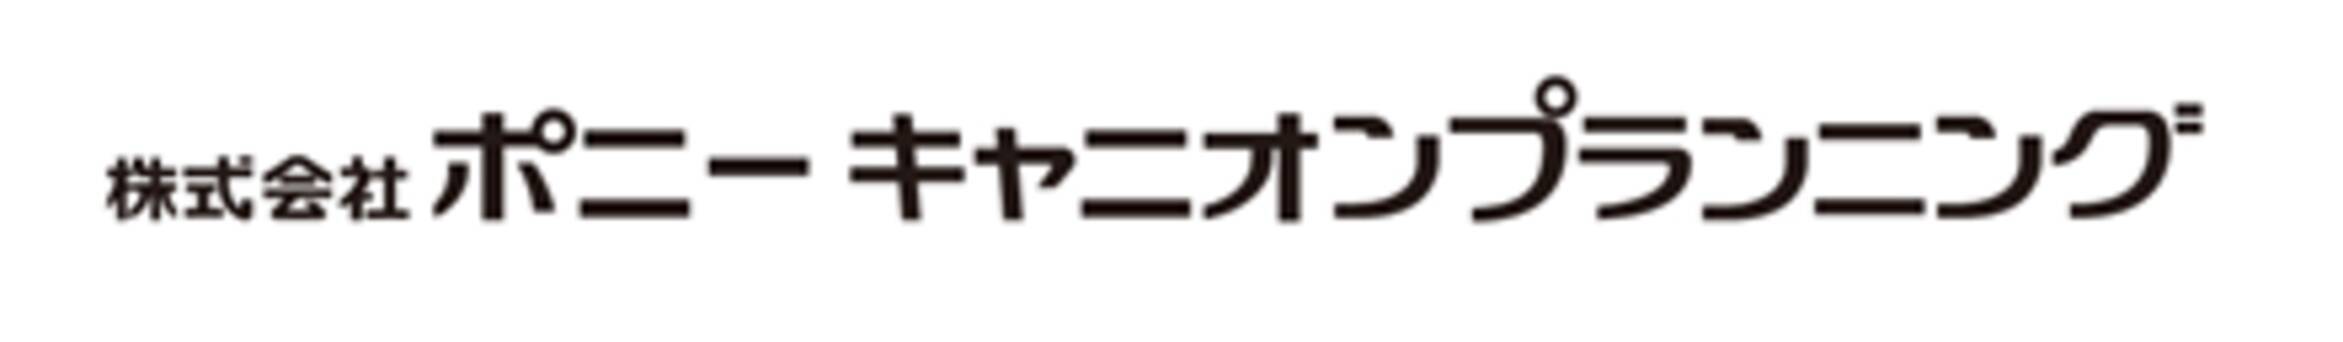 商号変更のお知らせ 株式会社ニッポンプランニングセンター 株式会社ポニーキャニオンプランニングへ社名変更 年6月26日 エキサイトニュース